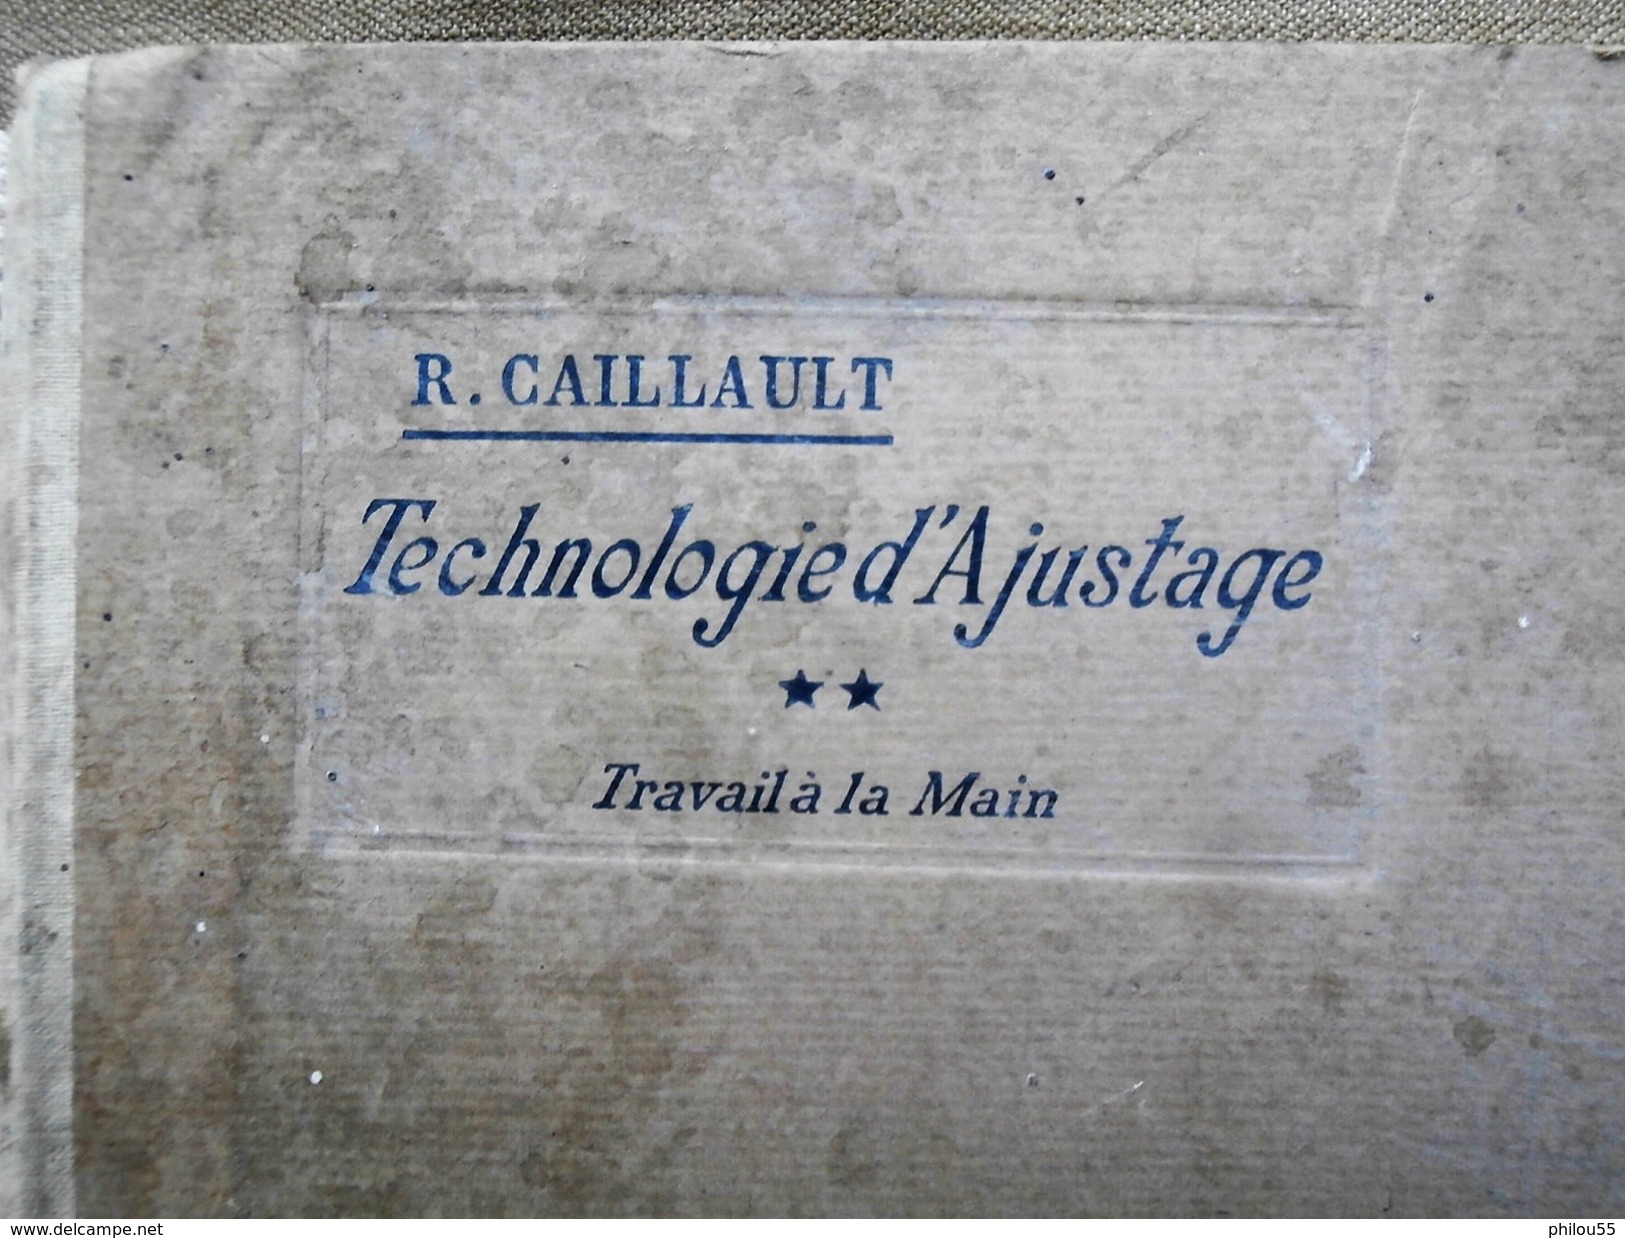 Technologie D'Ajustage Travail A La Main R. CAILLAUD Delagrave 1920 - Über 18